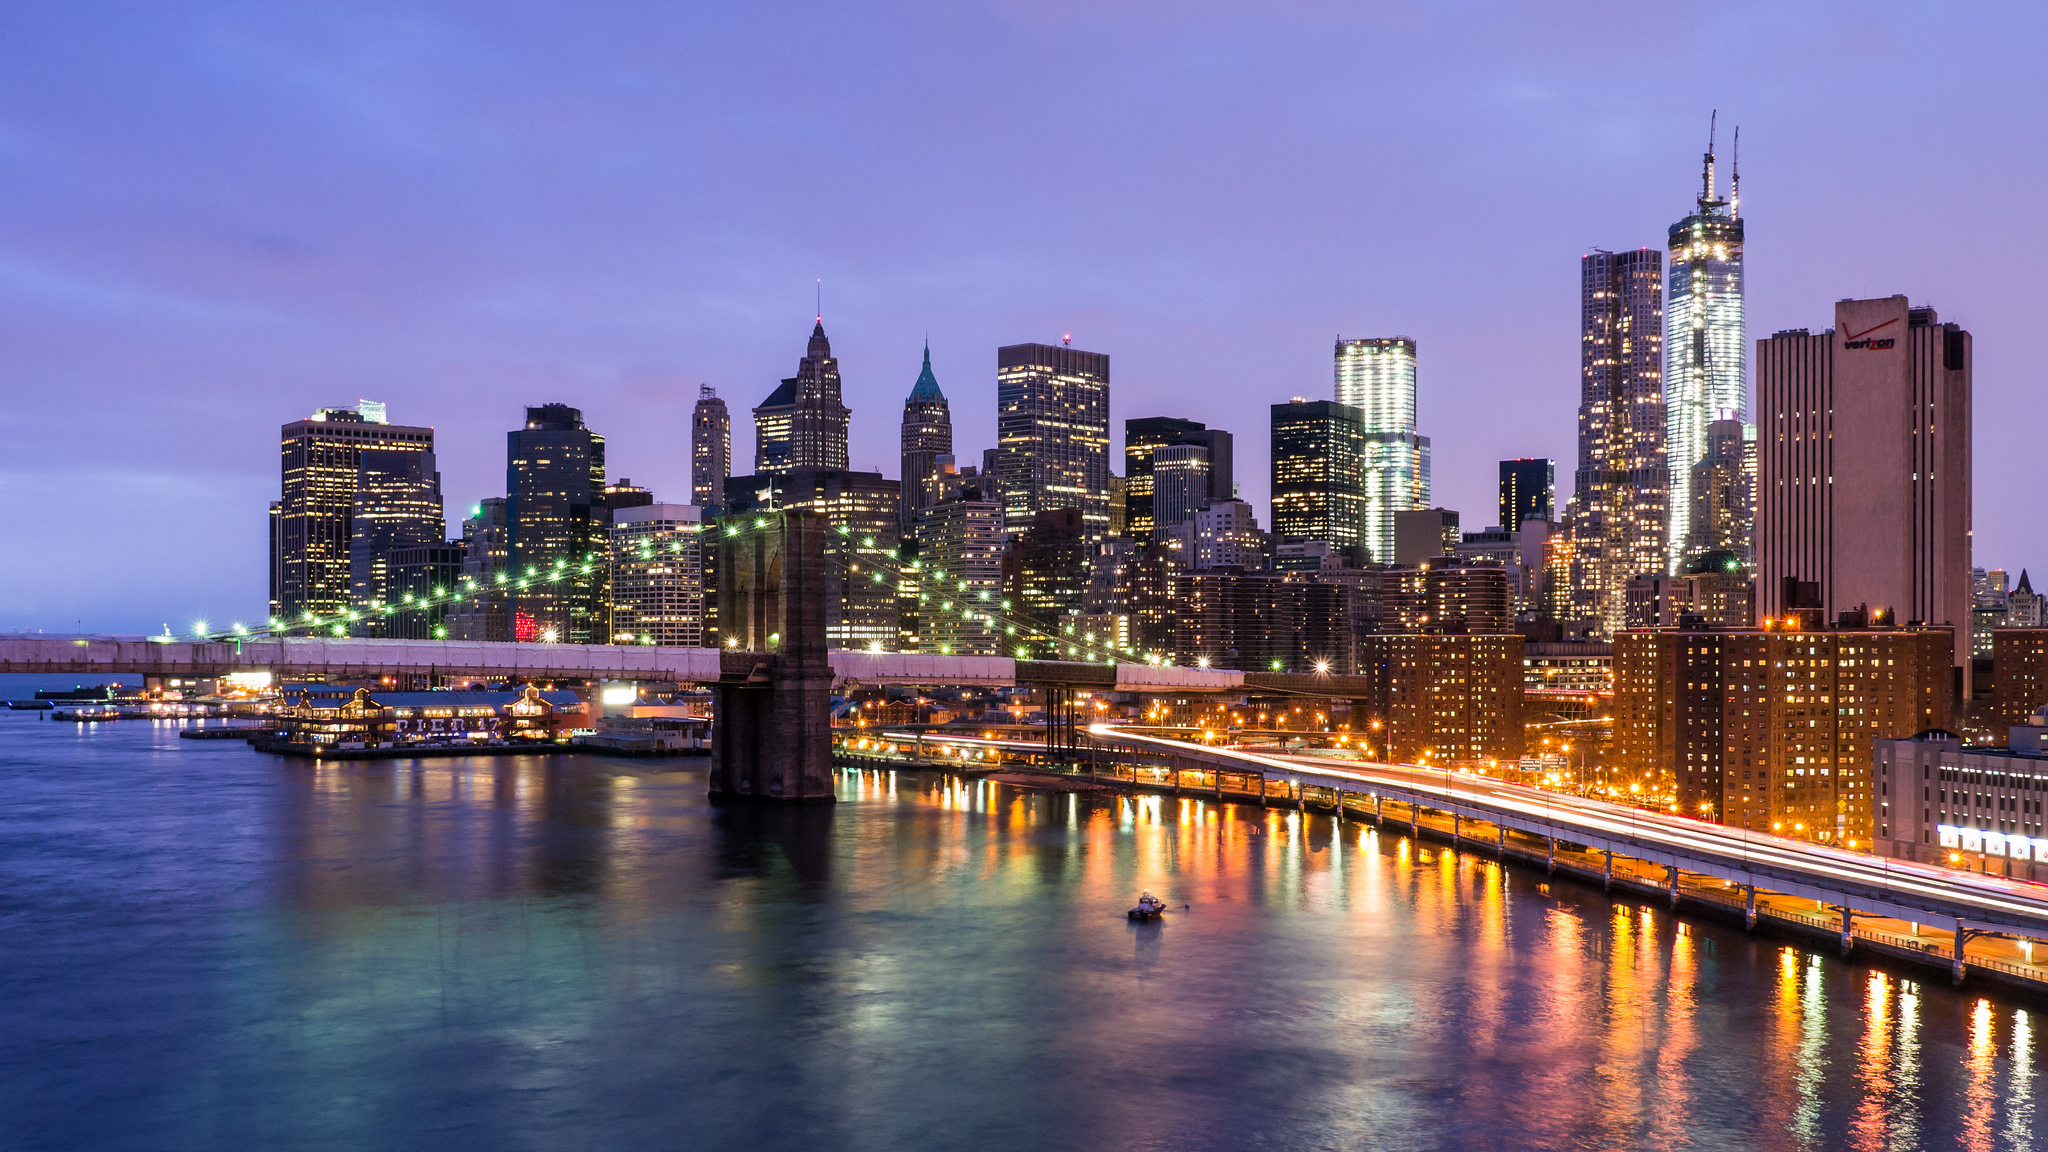 Nền desktop ở New York City sẽ khiến bạn phấn khích và tò mò về thành phố này như thế nào. Hình ảnh được chuyển tải trong một toàn cảnh rực rỡ với đủ sắc màu và chi tiết nhất định. Hãy khám phá bức ảnh này để bắt đầu hành trình khám phá huyền thoại New York City.